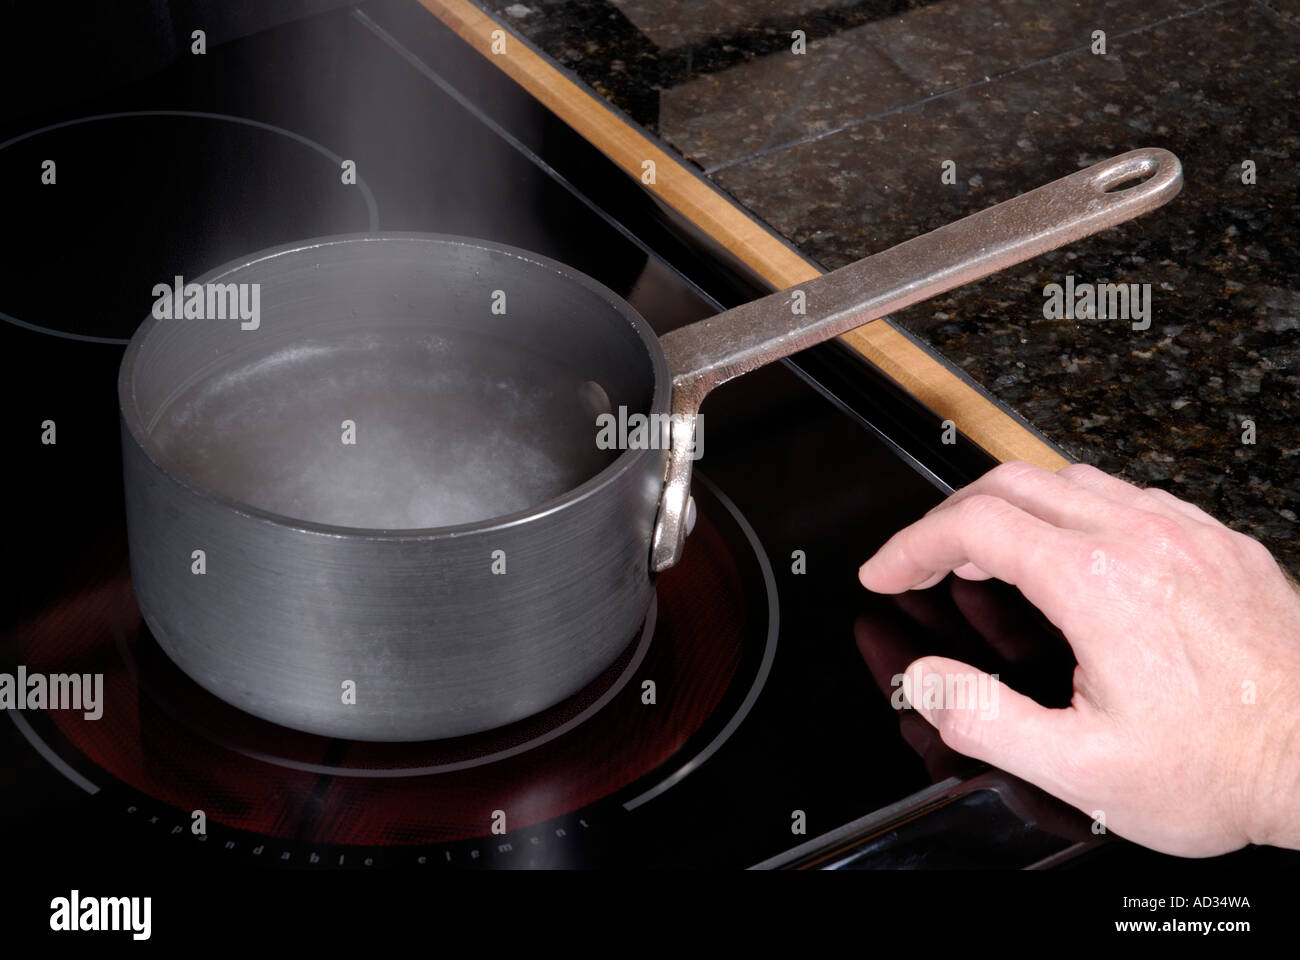 Foto de bodegón de cacerolas de metal en la estufa de inducción en la cocina